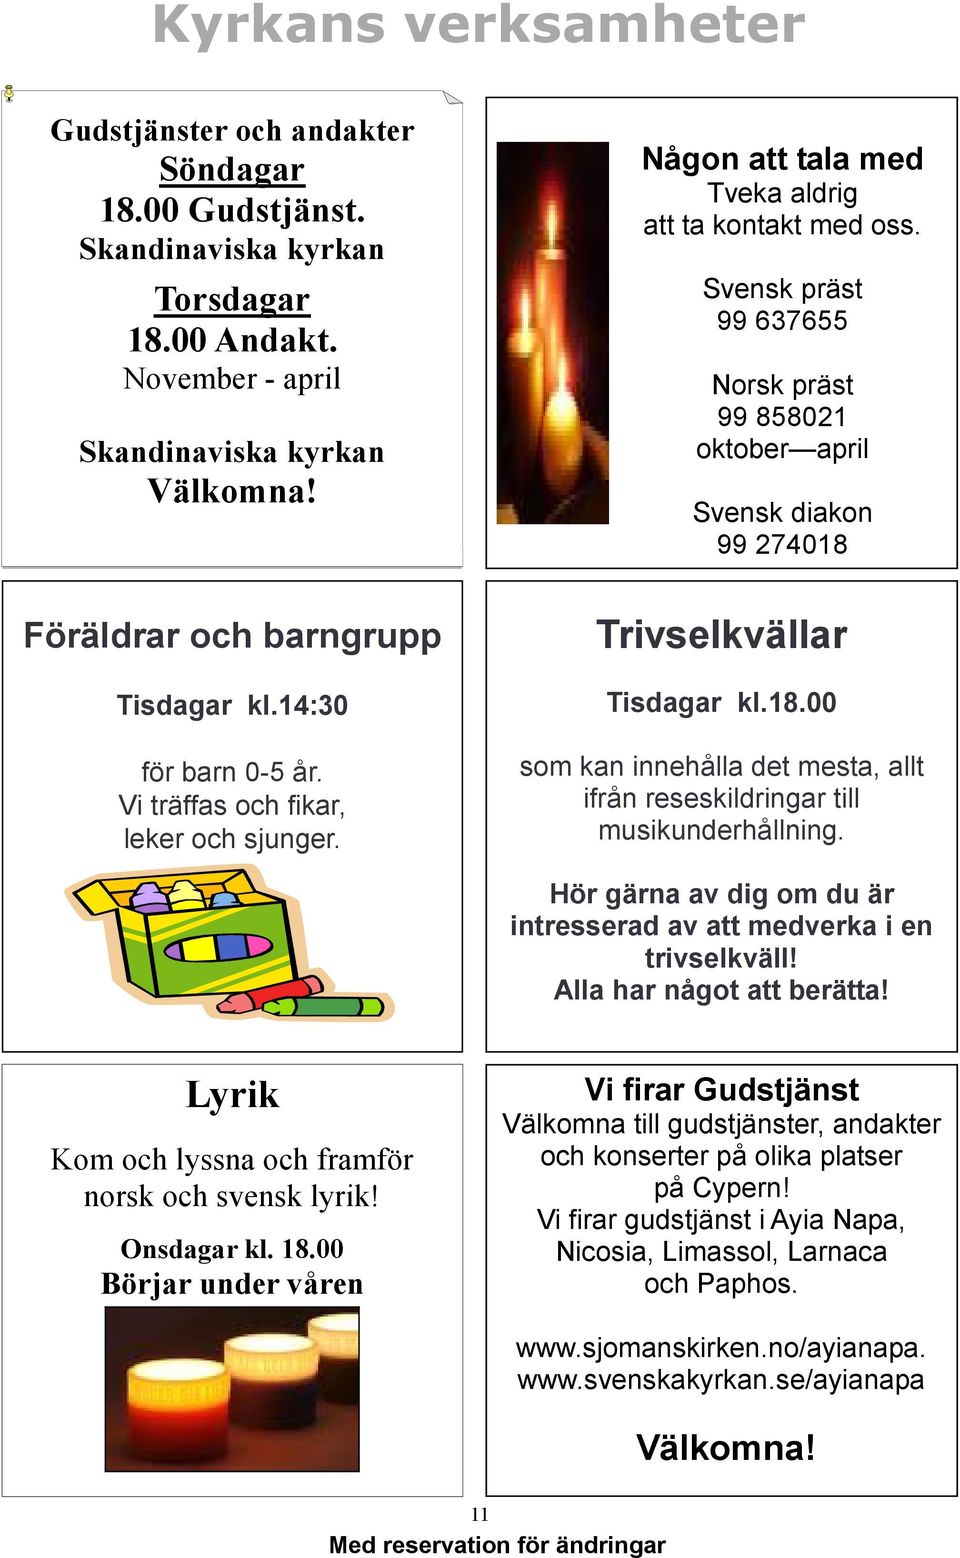 Svensk präst 99 637655 Norsk präst 99 858021 oktober april Svensk diakon 99 274018 Trivselkvällar Tisdagar kl.18.00 som kan innehålla det mesta, allt ifrån reseskildringar till musikunderhållning.